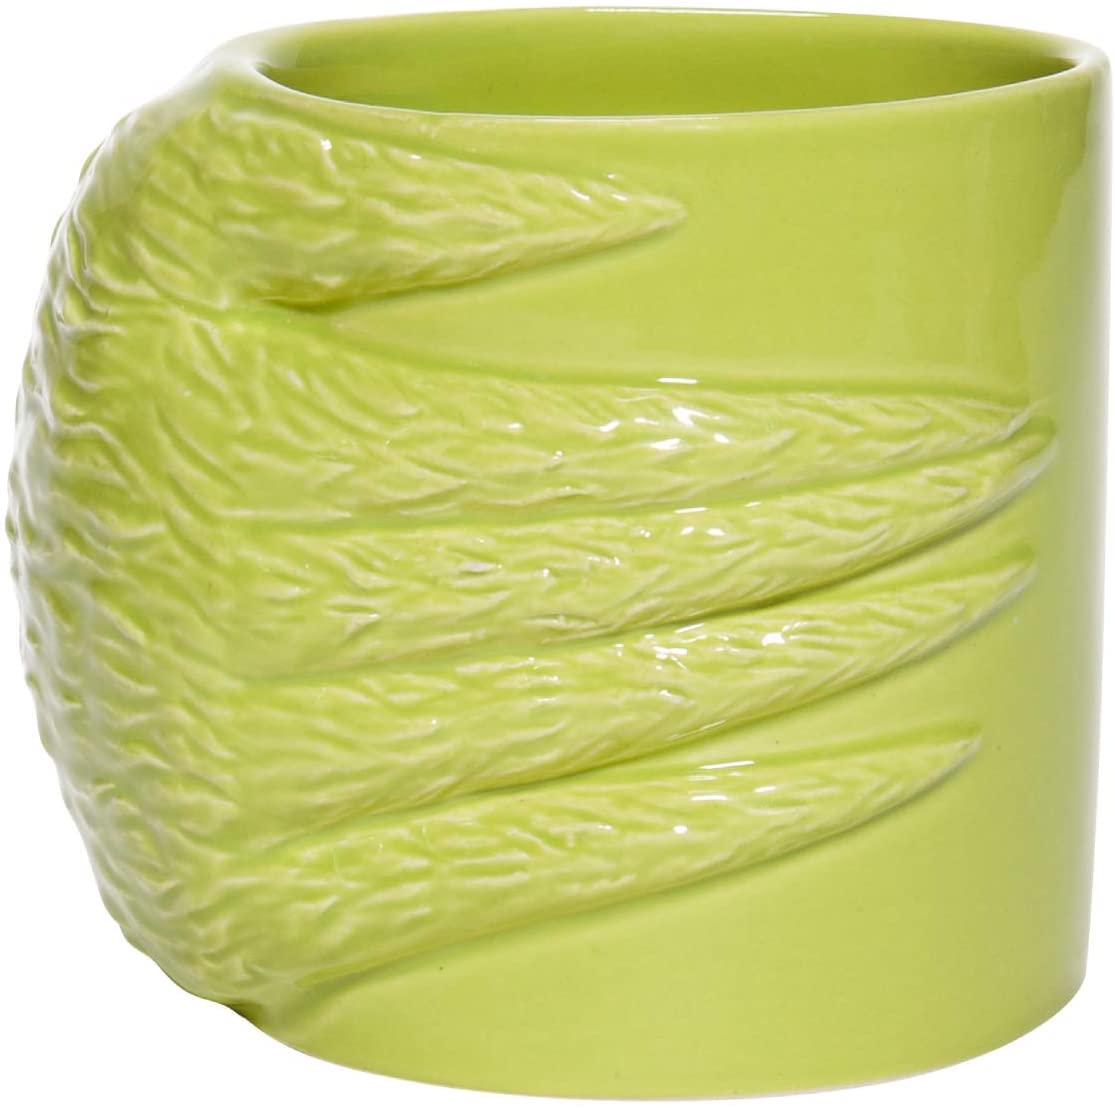 Dr. Seuss Grinch Sculpted Ceramic Mug